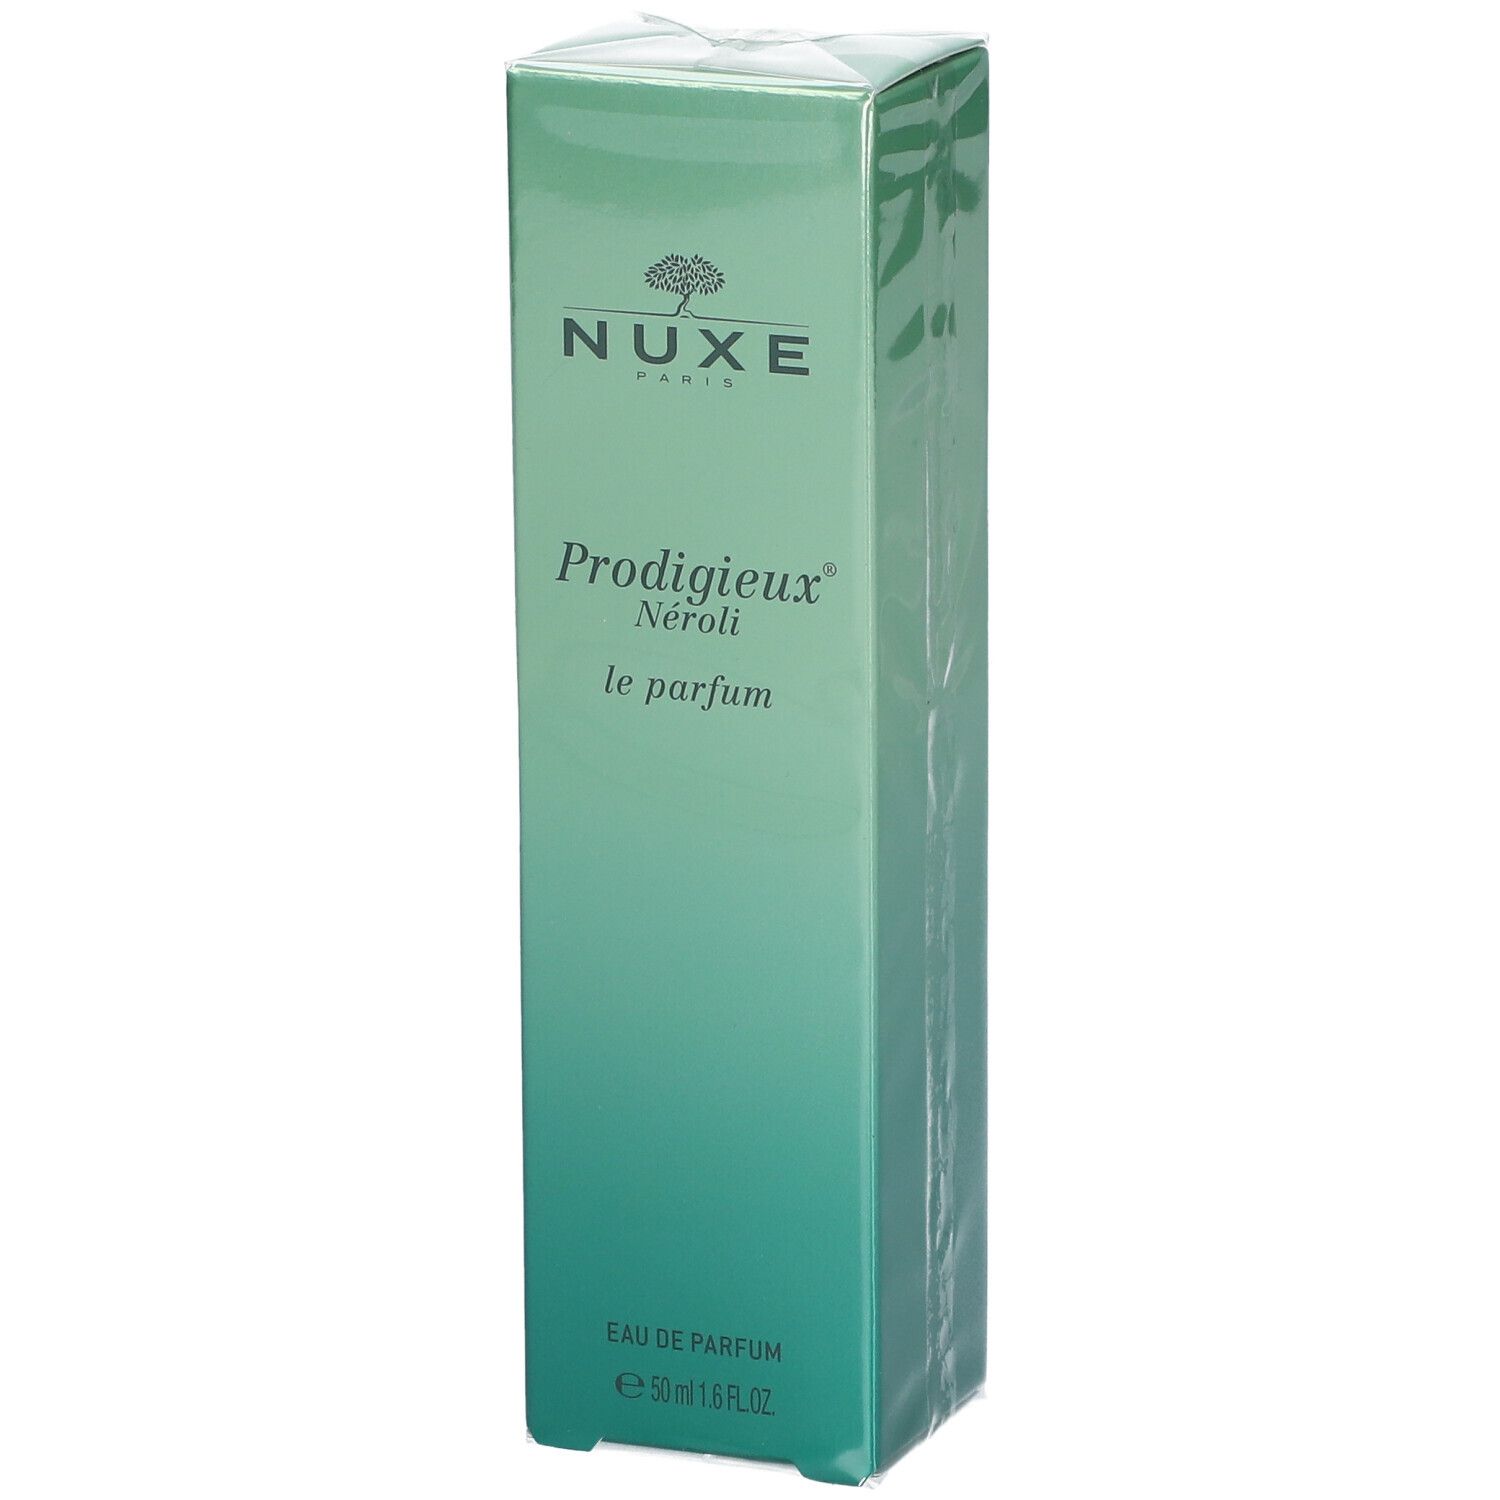 NUXE Prodigieux® Néroli Le Parfum